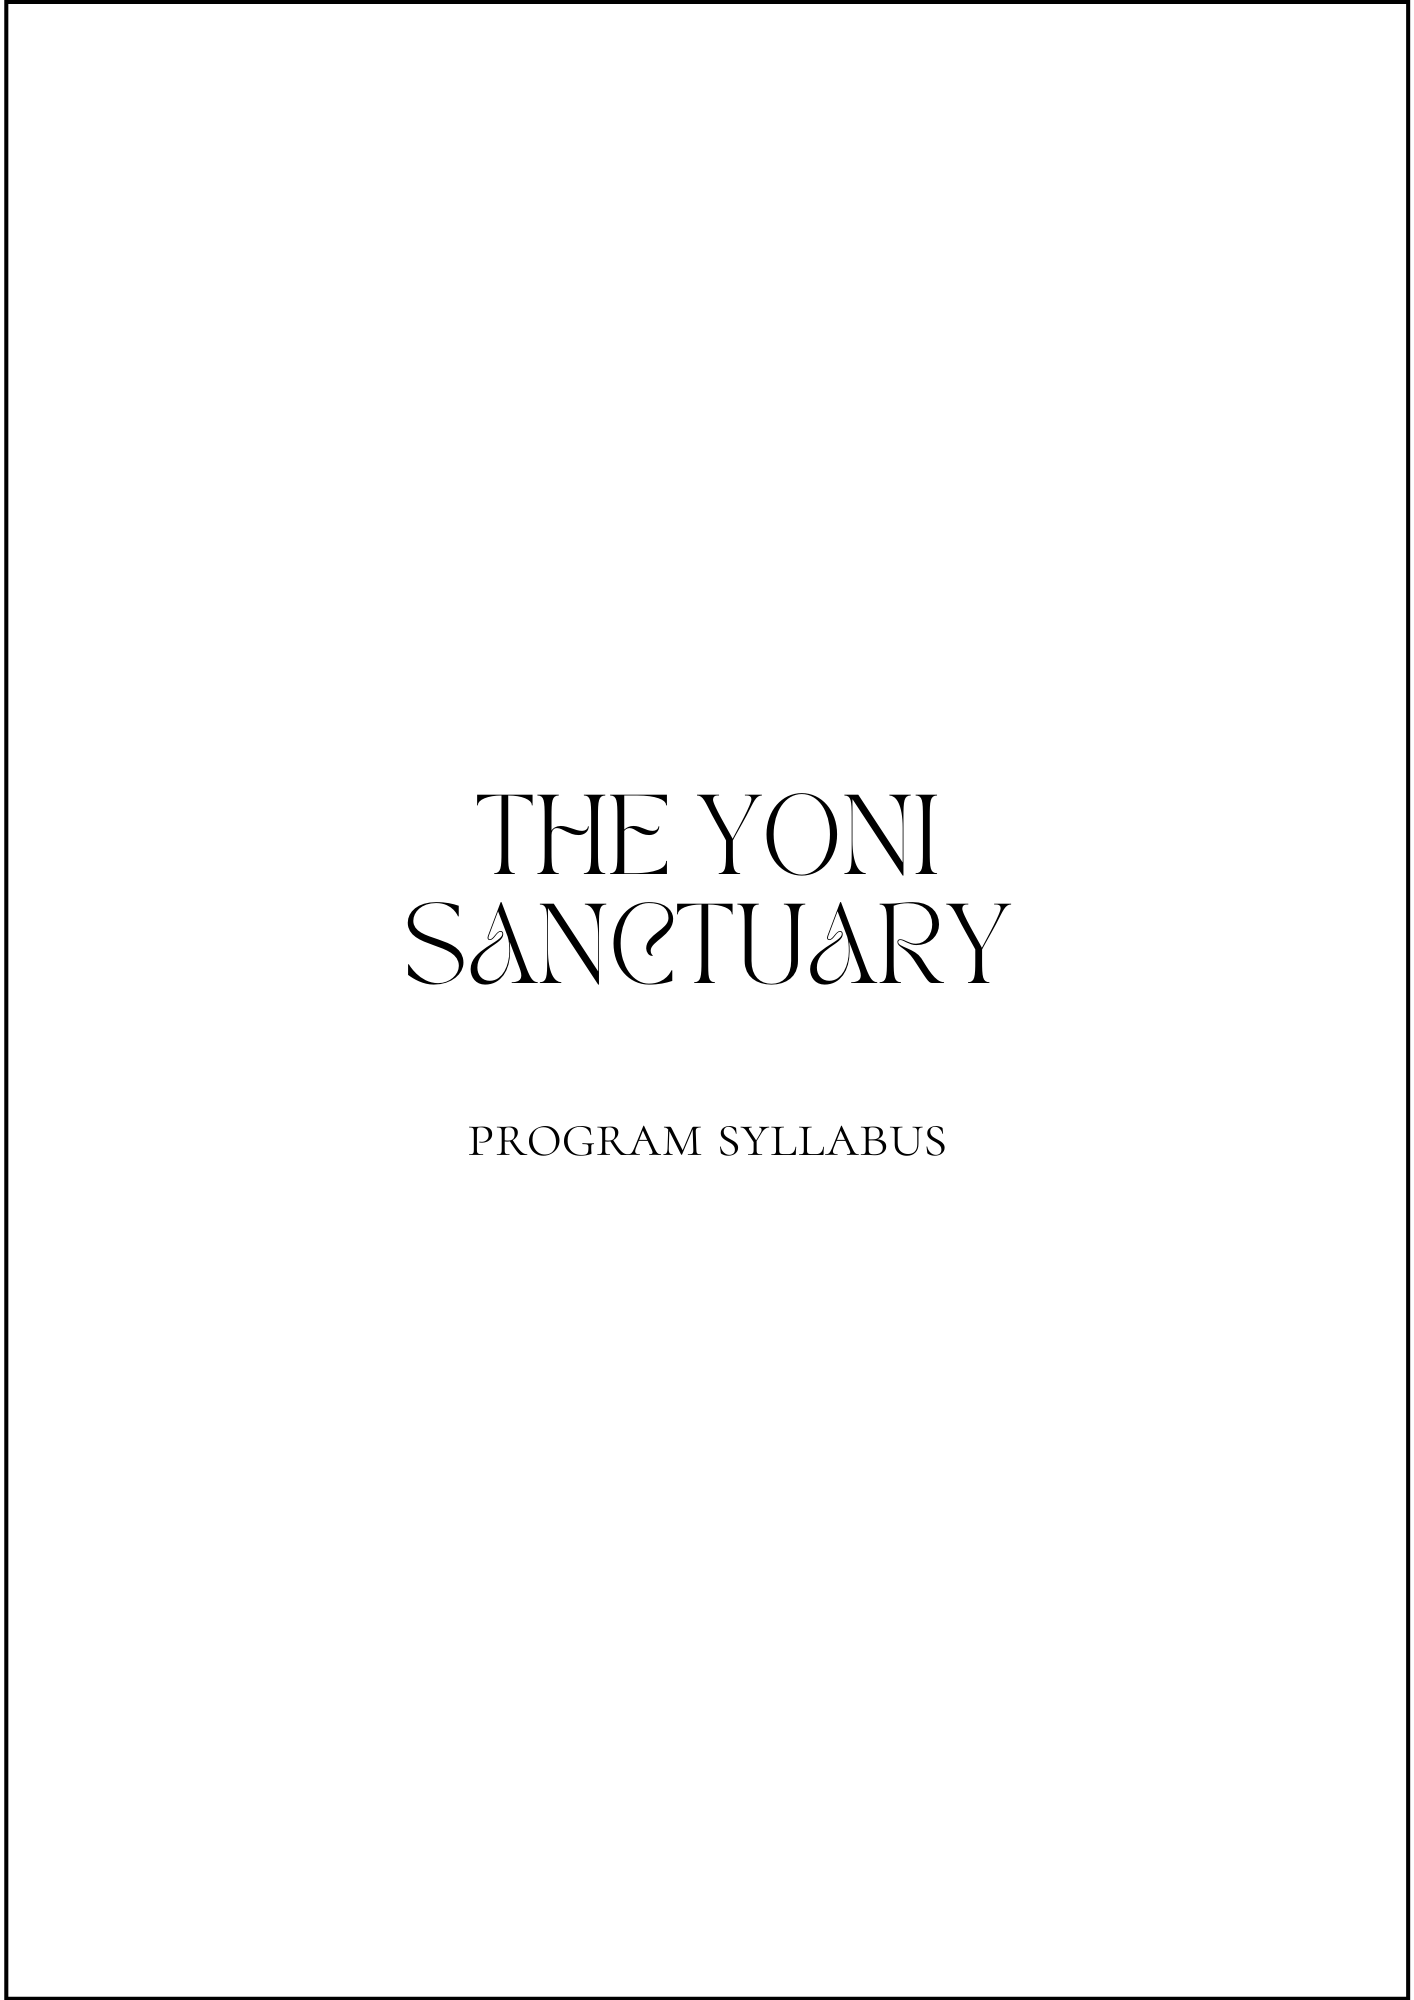 NEW YONI SANCTUARY syllabus